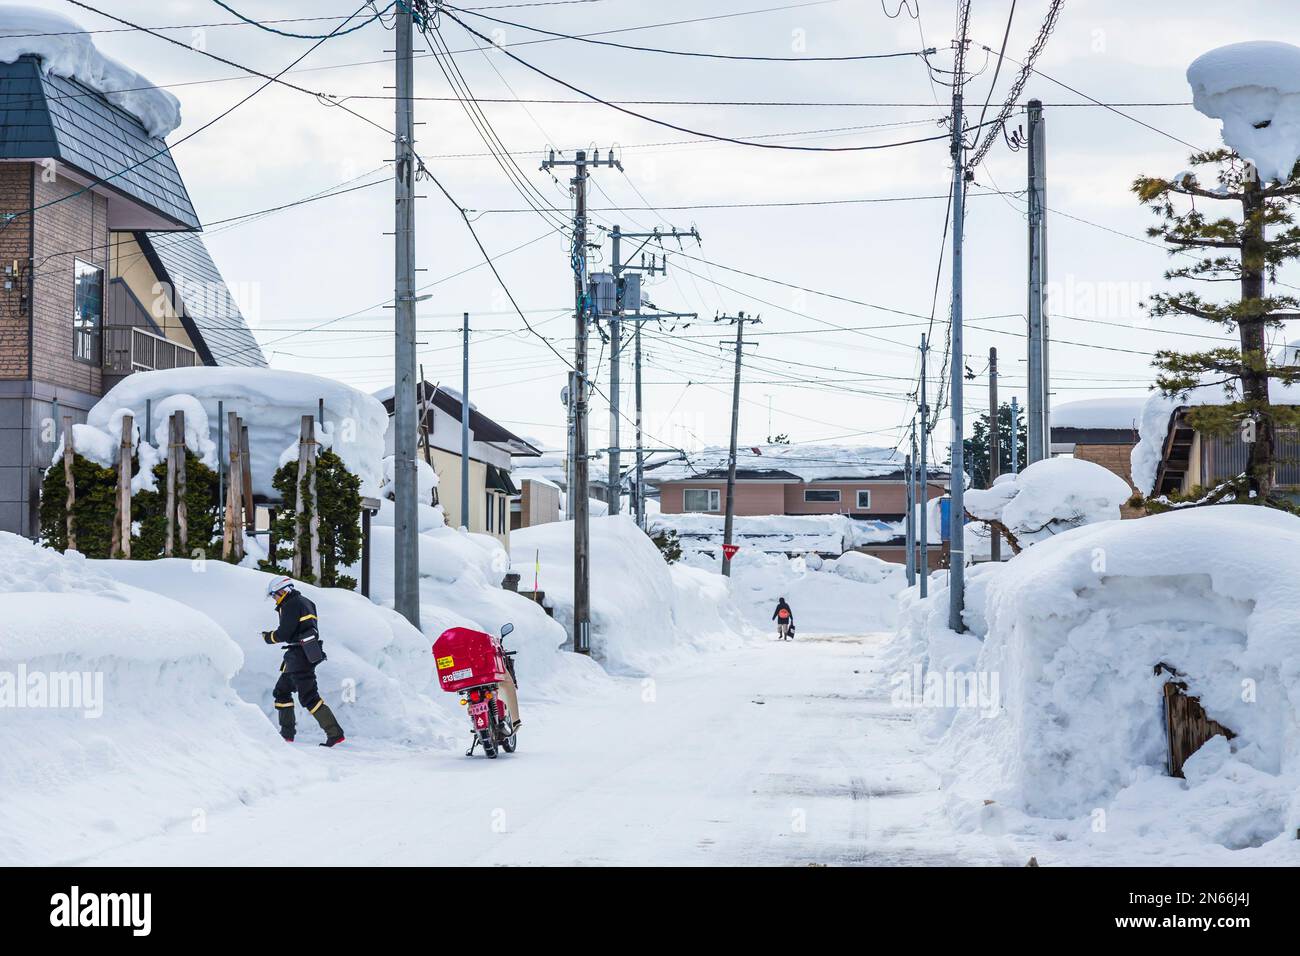 Postman avec moto, la vie dans un pays de neige, ville célèbre par la neige lourde, ville de Yokote, Akita, Tohoku, Japon, Asie de l'est, Asie Banque D'Images